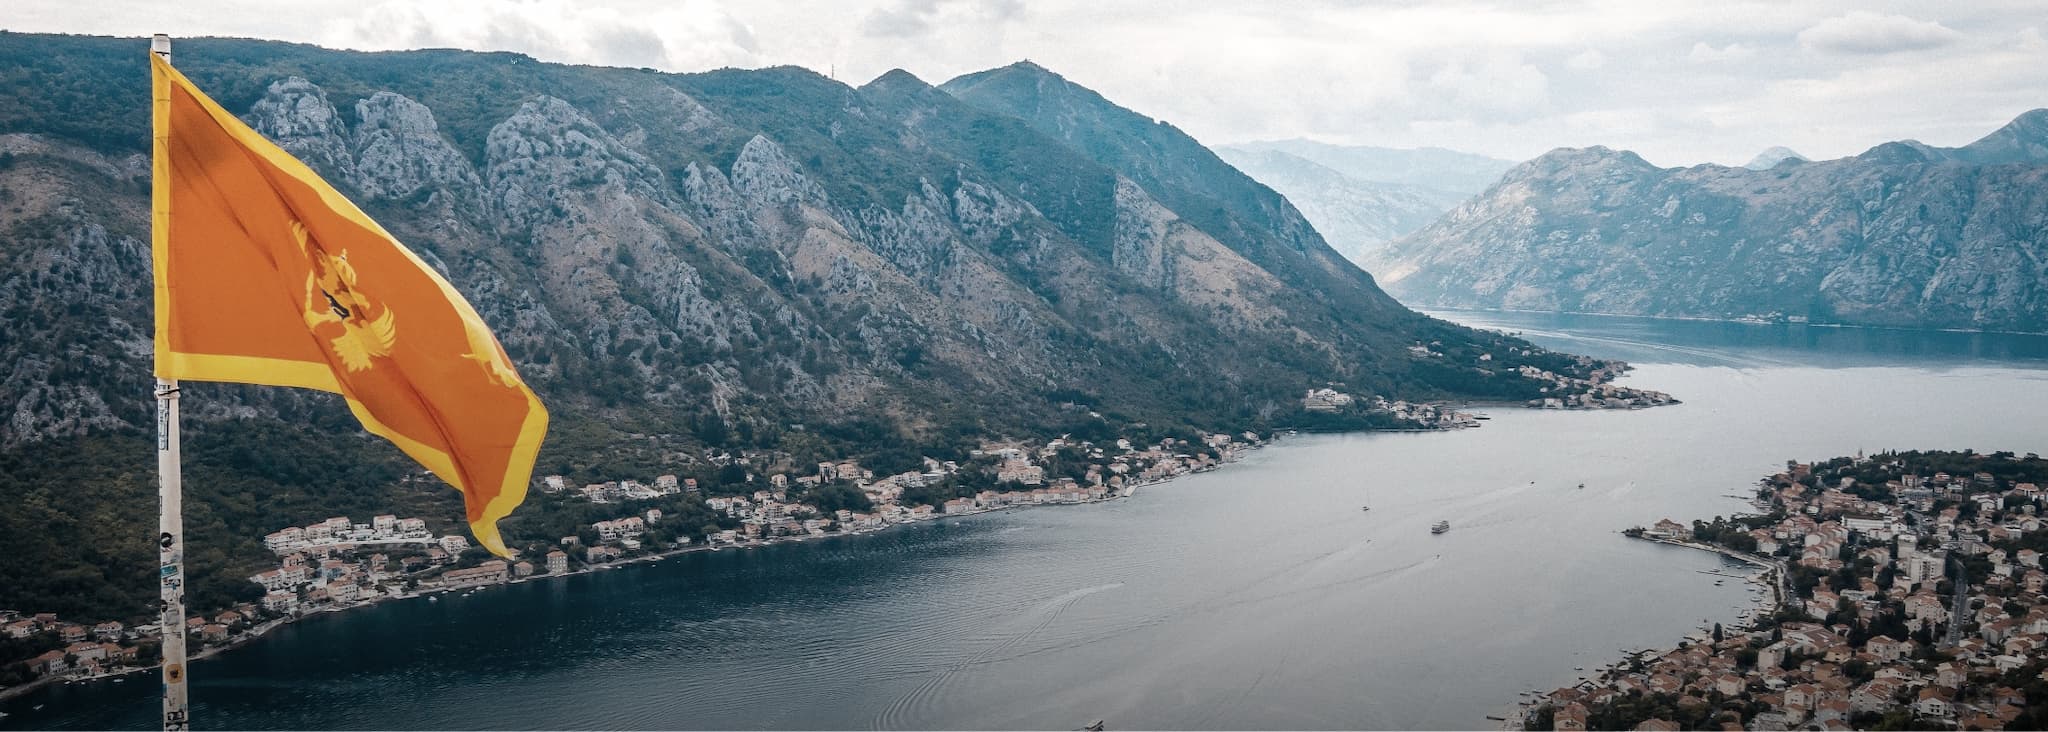 Bild von einem Aussichtspunkt in einer Stadt in Montenegro